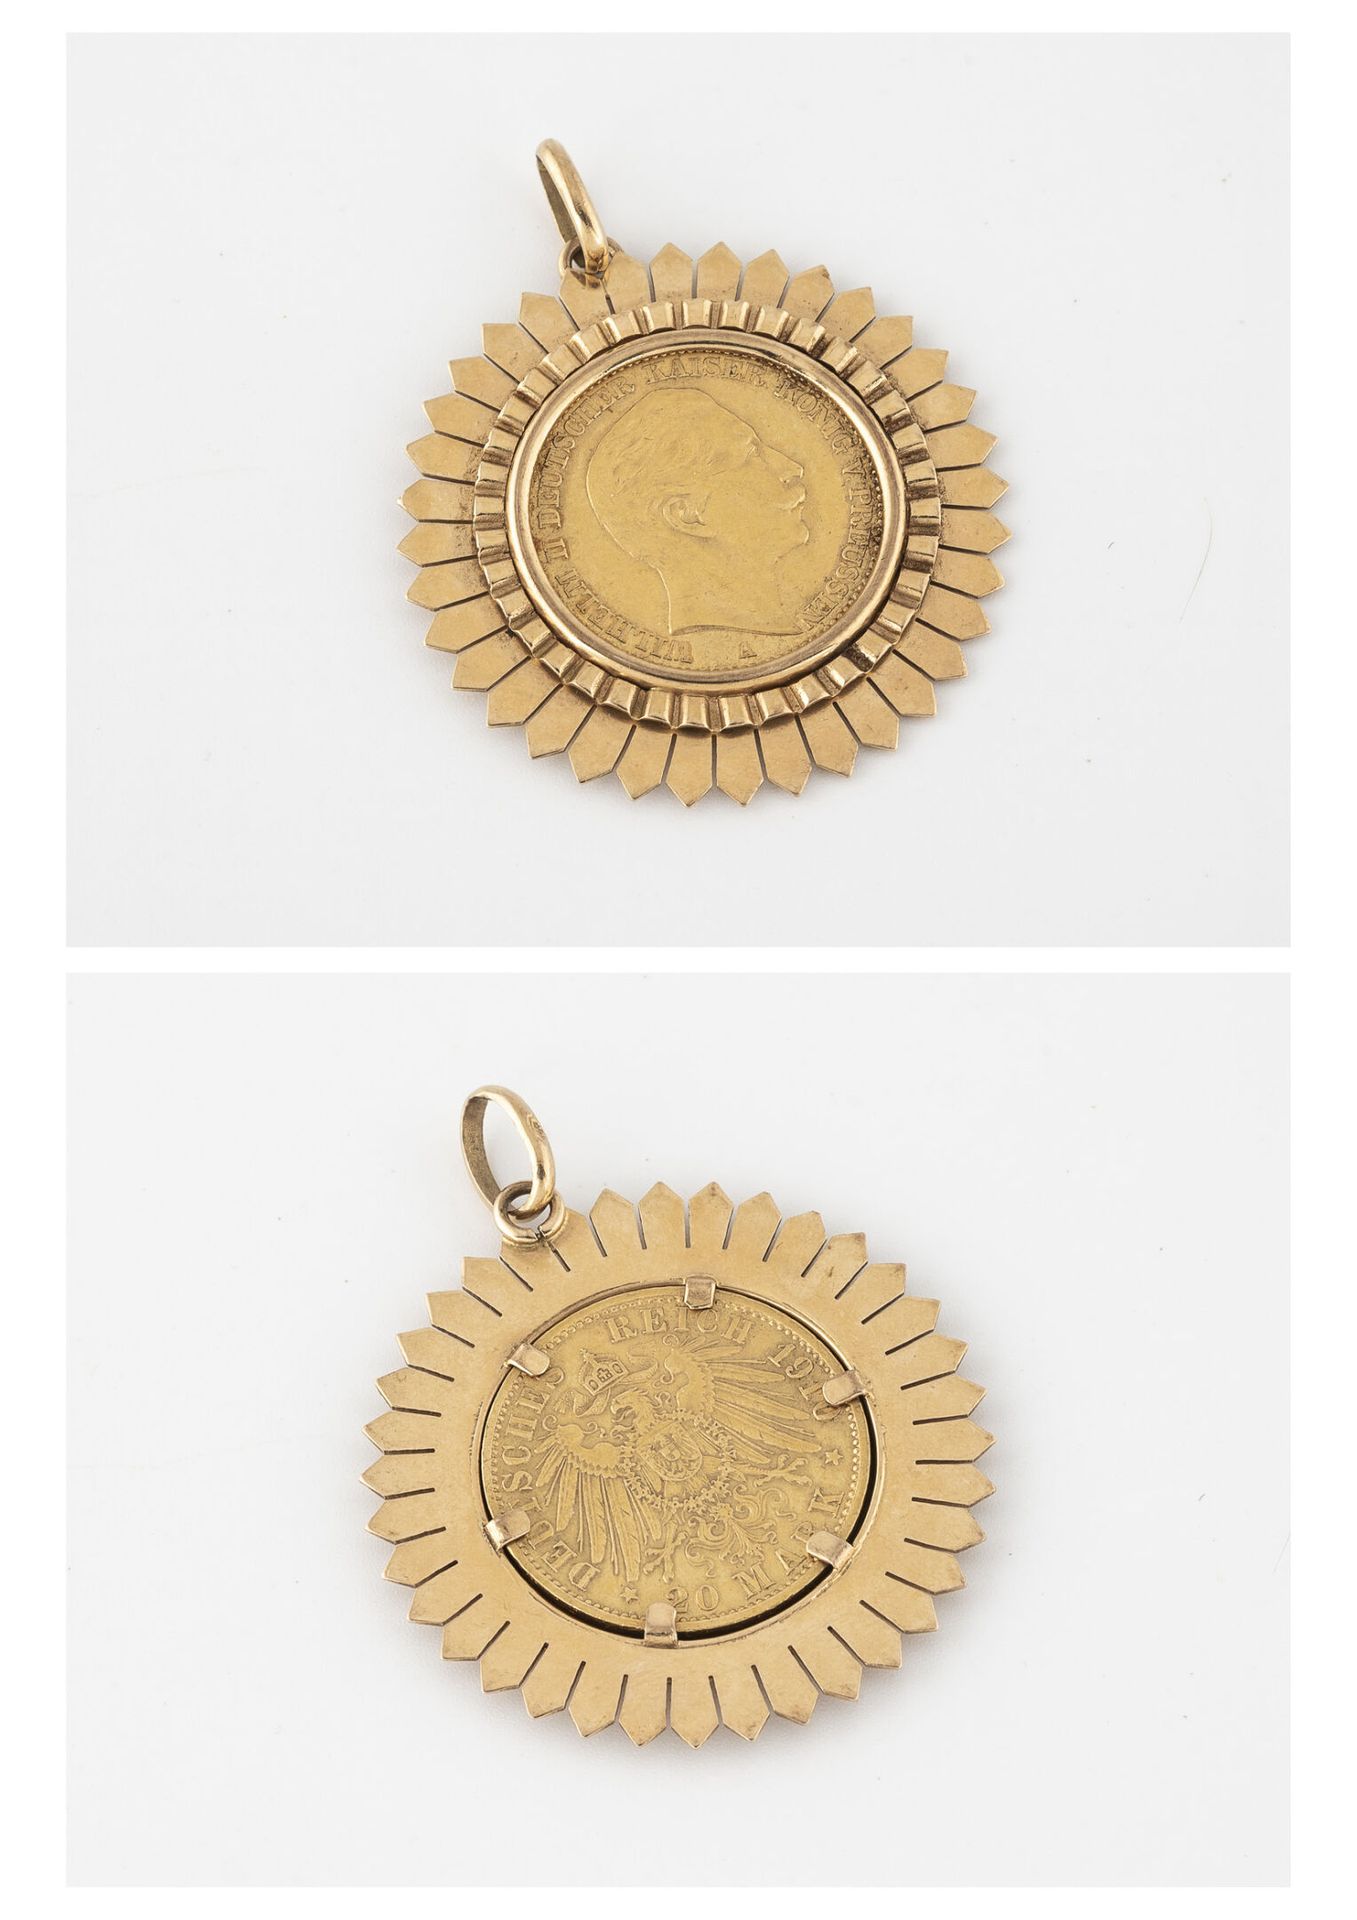 Null 黄金（750）吊坠，手持20马克硬币，威廉二世；1910年。

重量：15.1克。- 迪姆。3.7厘米。 

因使用而产生的划痕。